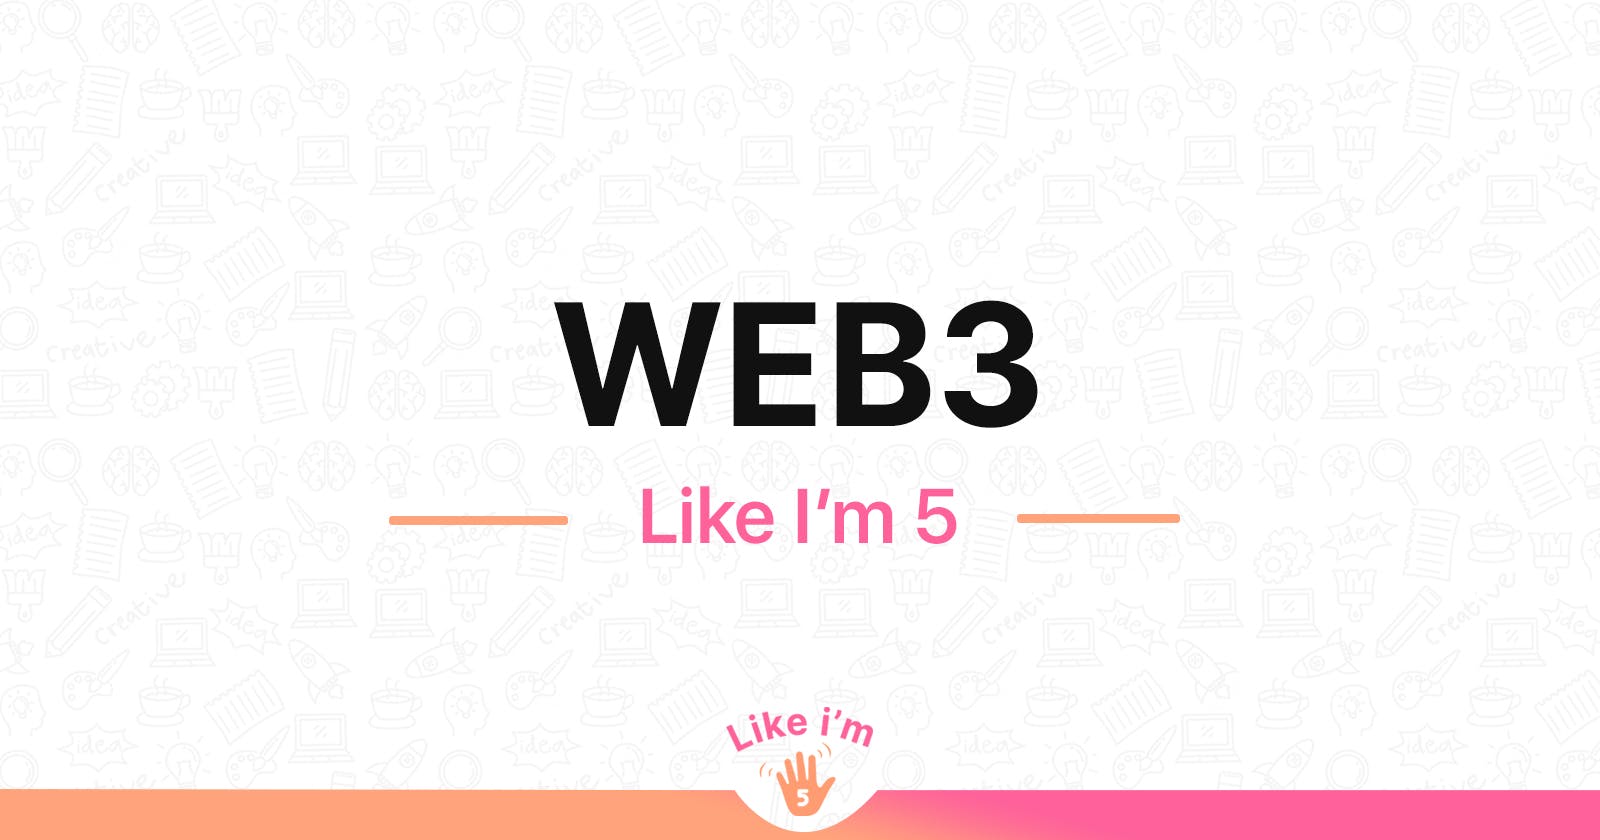 Web 3.0 - Explained